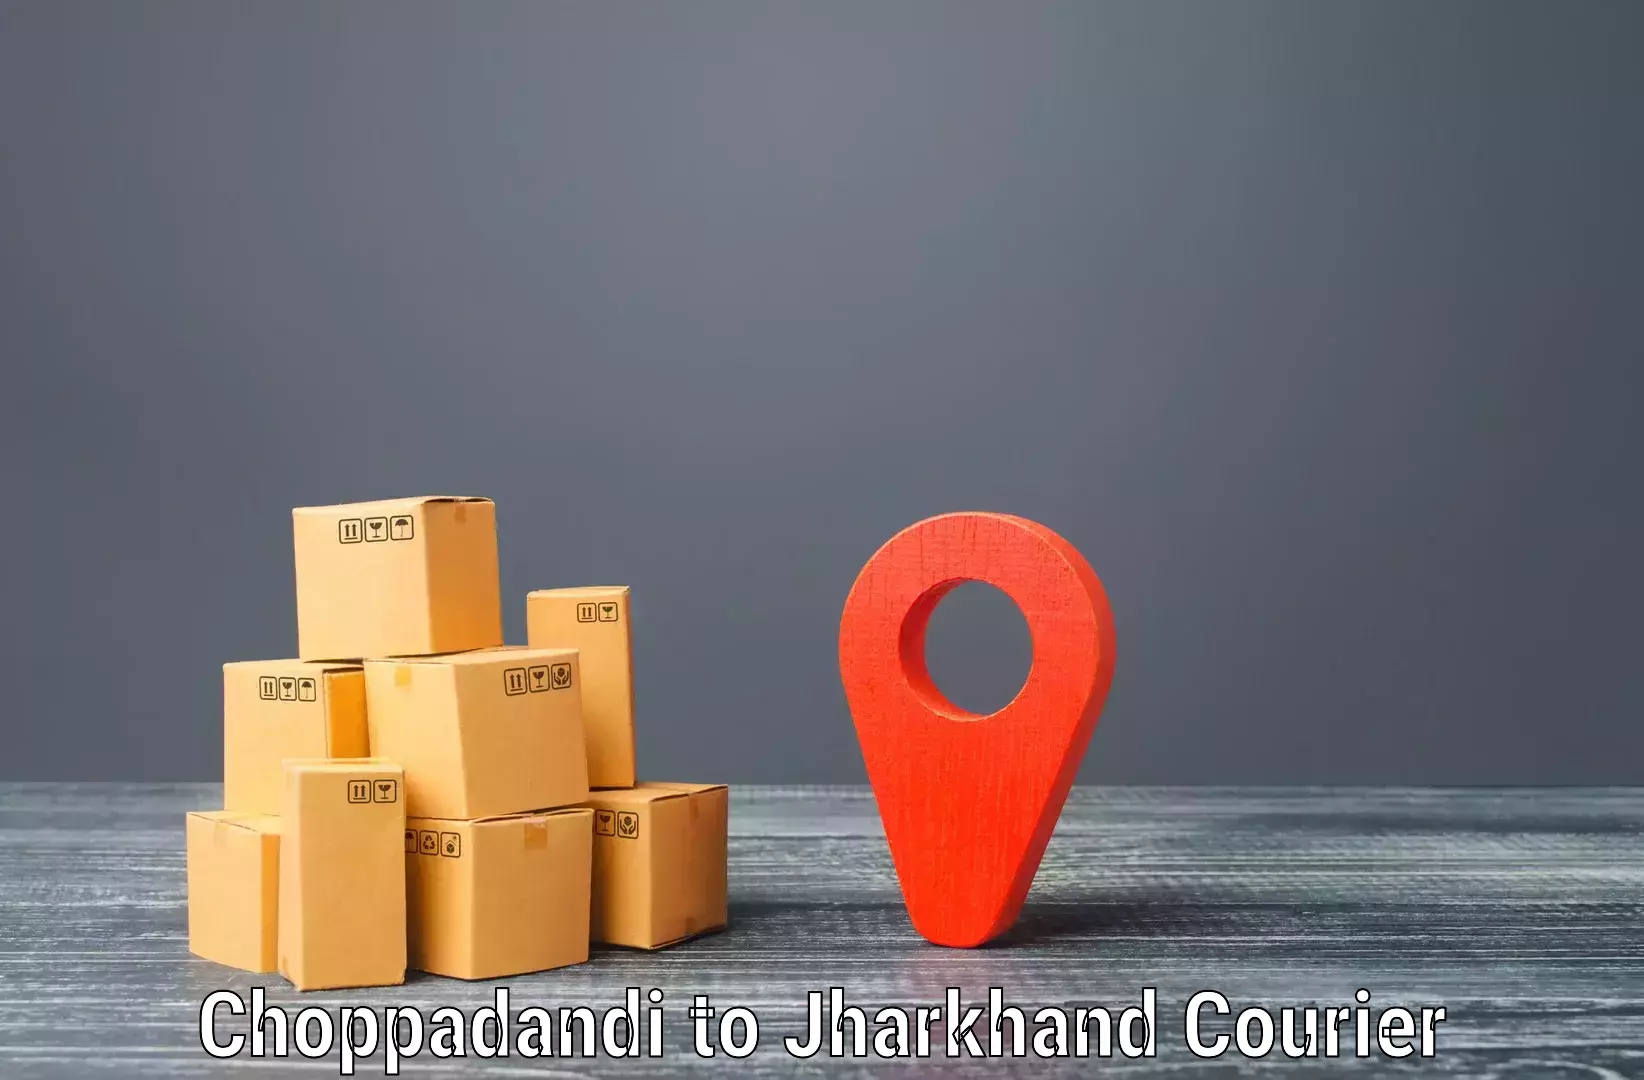 Smart shipping technology Choppadandi to Domchanch